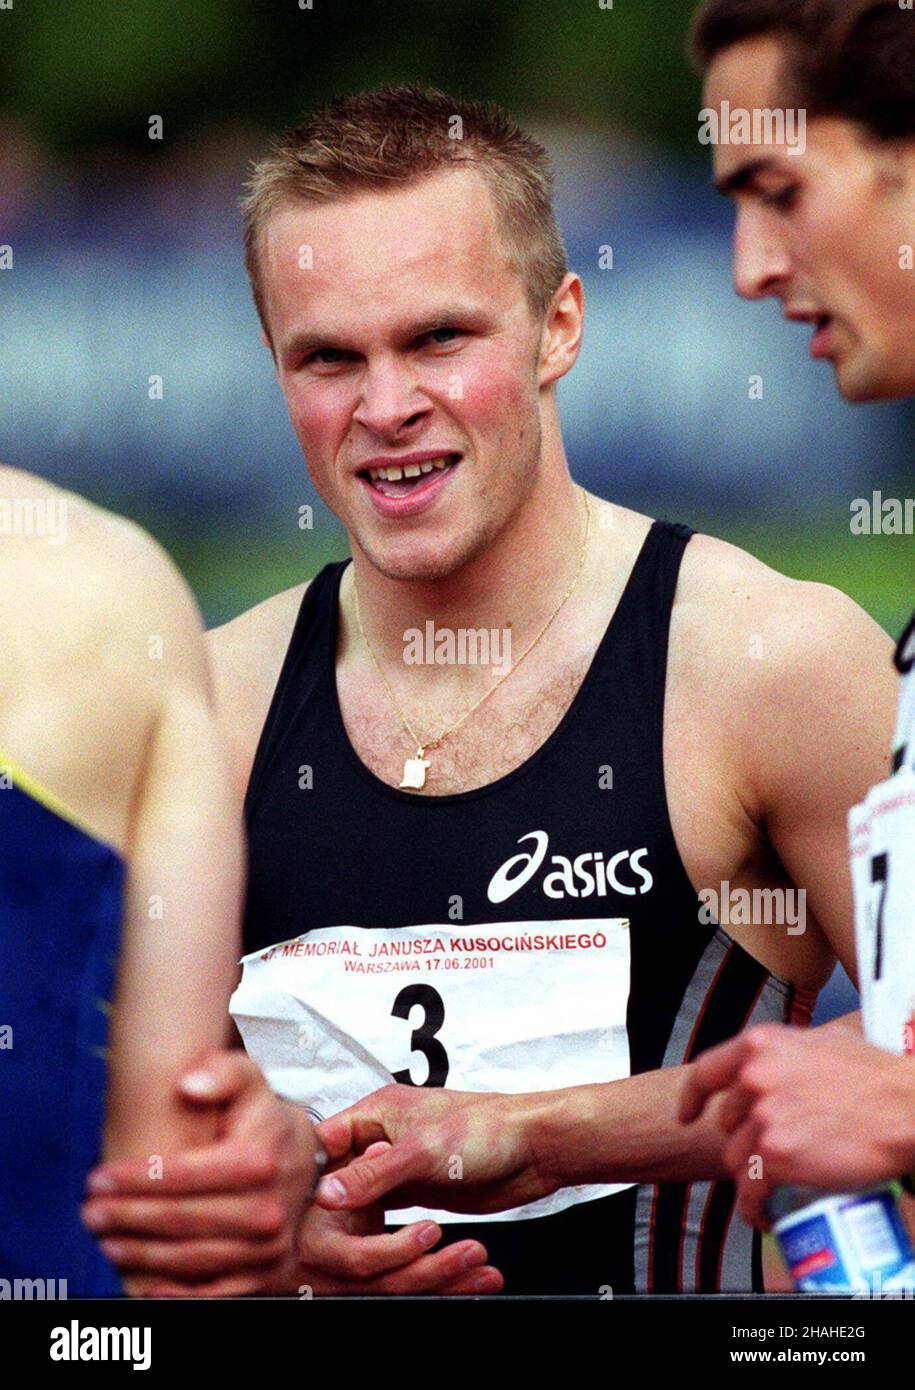 Warszwa, 17.06.2001. Polski lekkoatleta Marcin Urbaœ. (kru) PAP/Przemek Wierzchowski     Warsaw, 17.06.2001. Polish athlete Marcin Urbas.   (kru) PAP/Przemek Wierzchowski Stock Photo